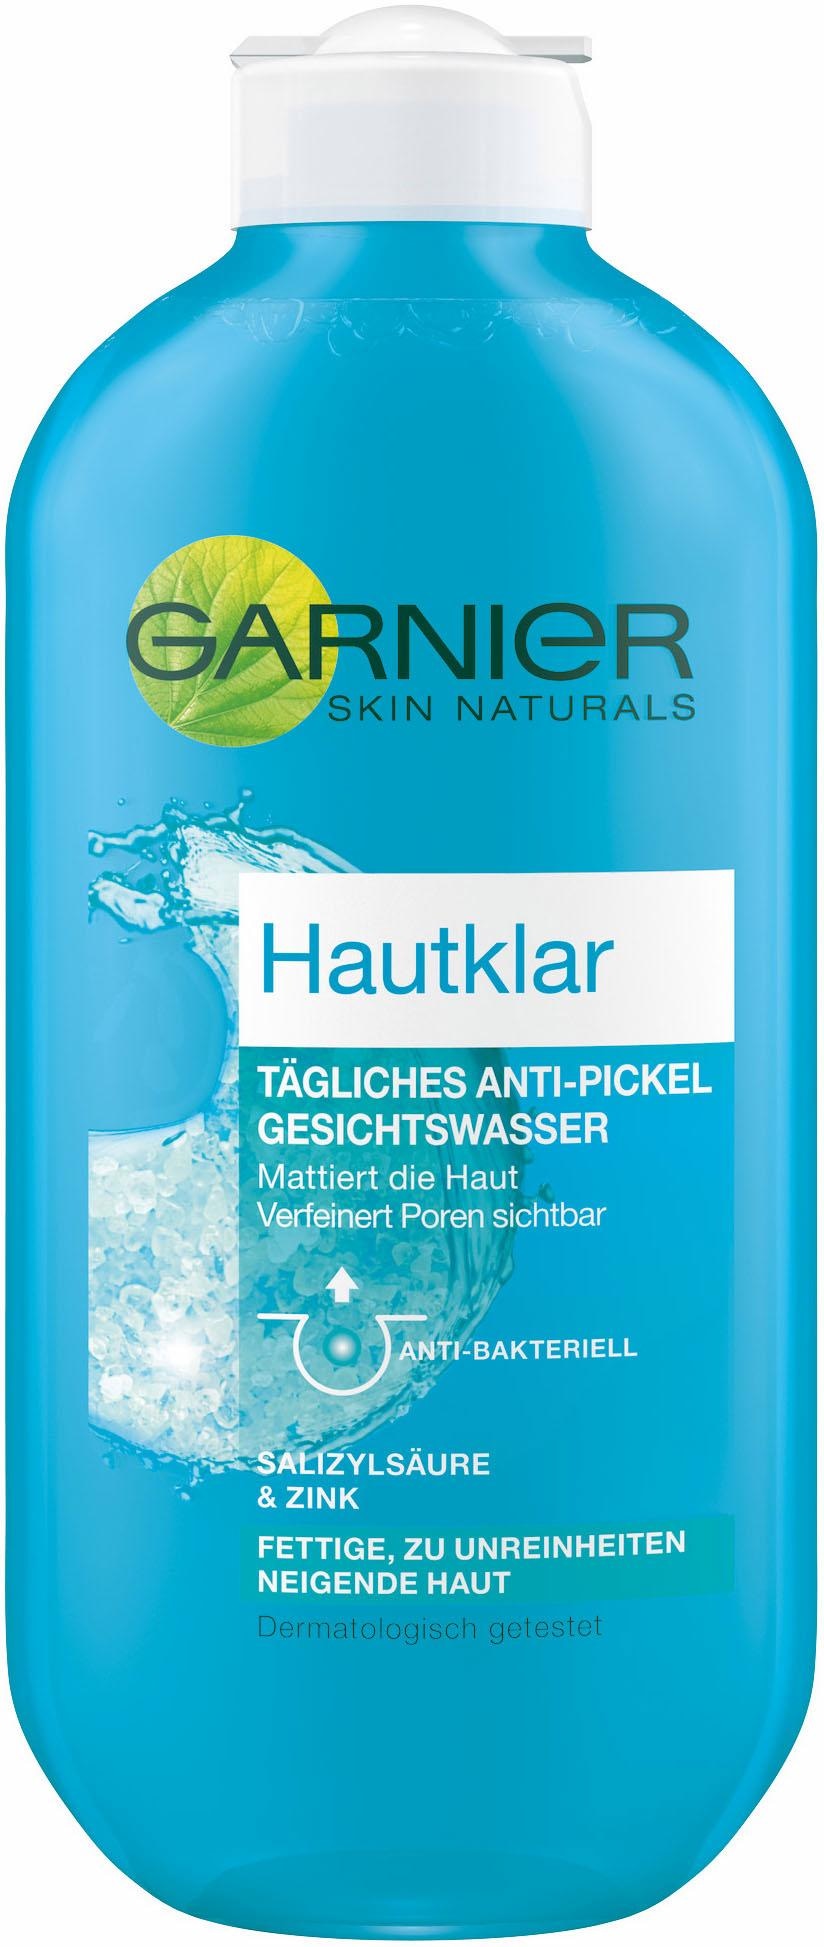 GARNIER Gesichtswasser Anti-Pickel kaufen »Hautklar«, online